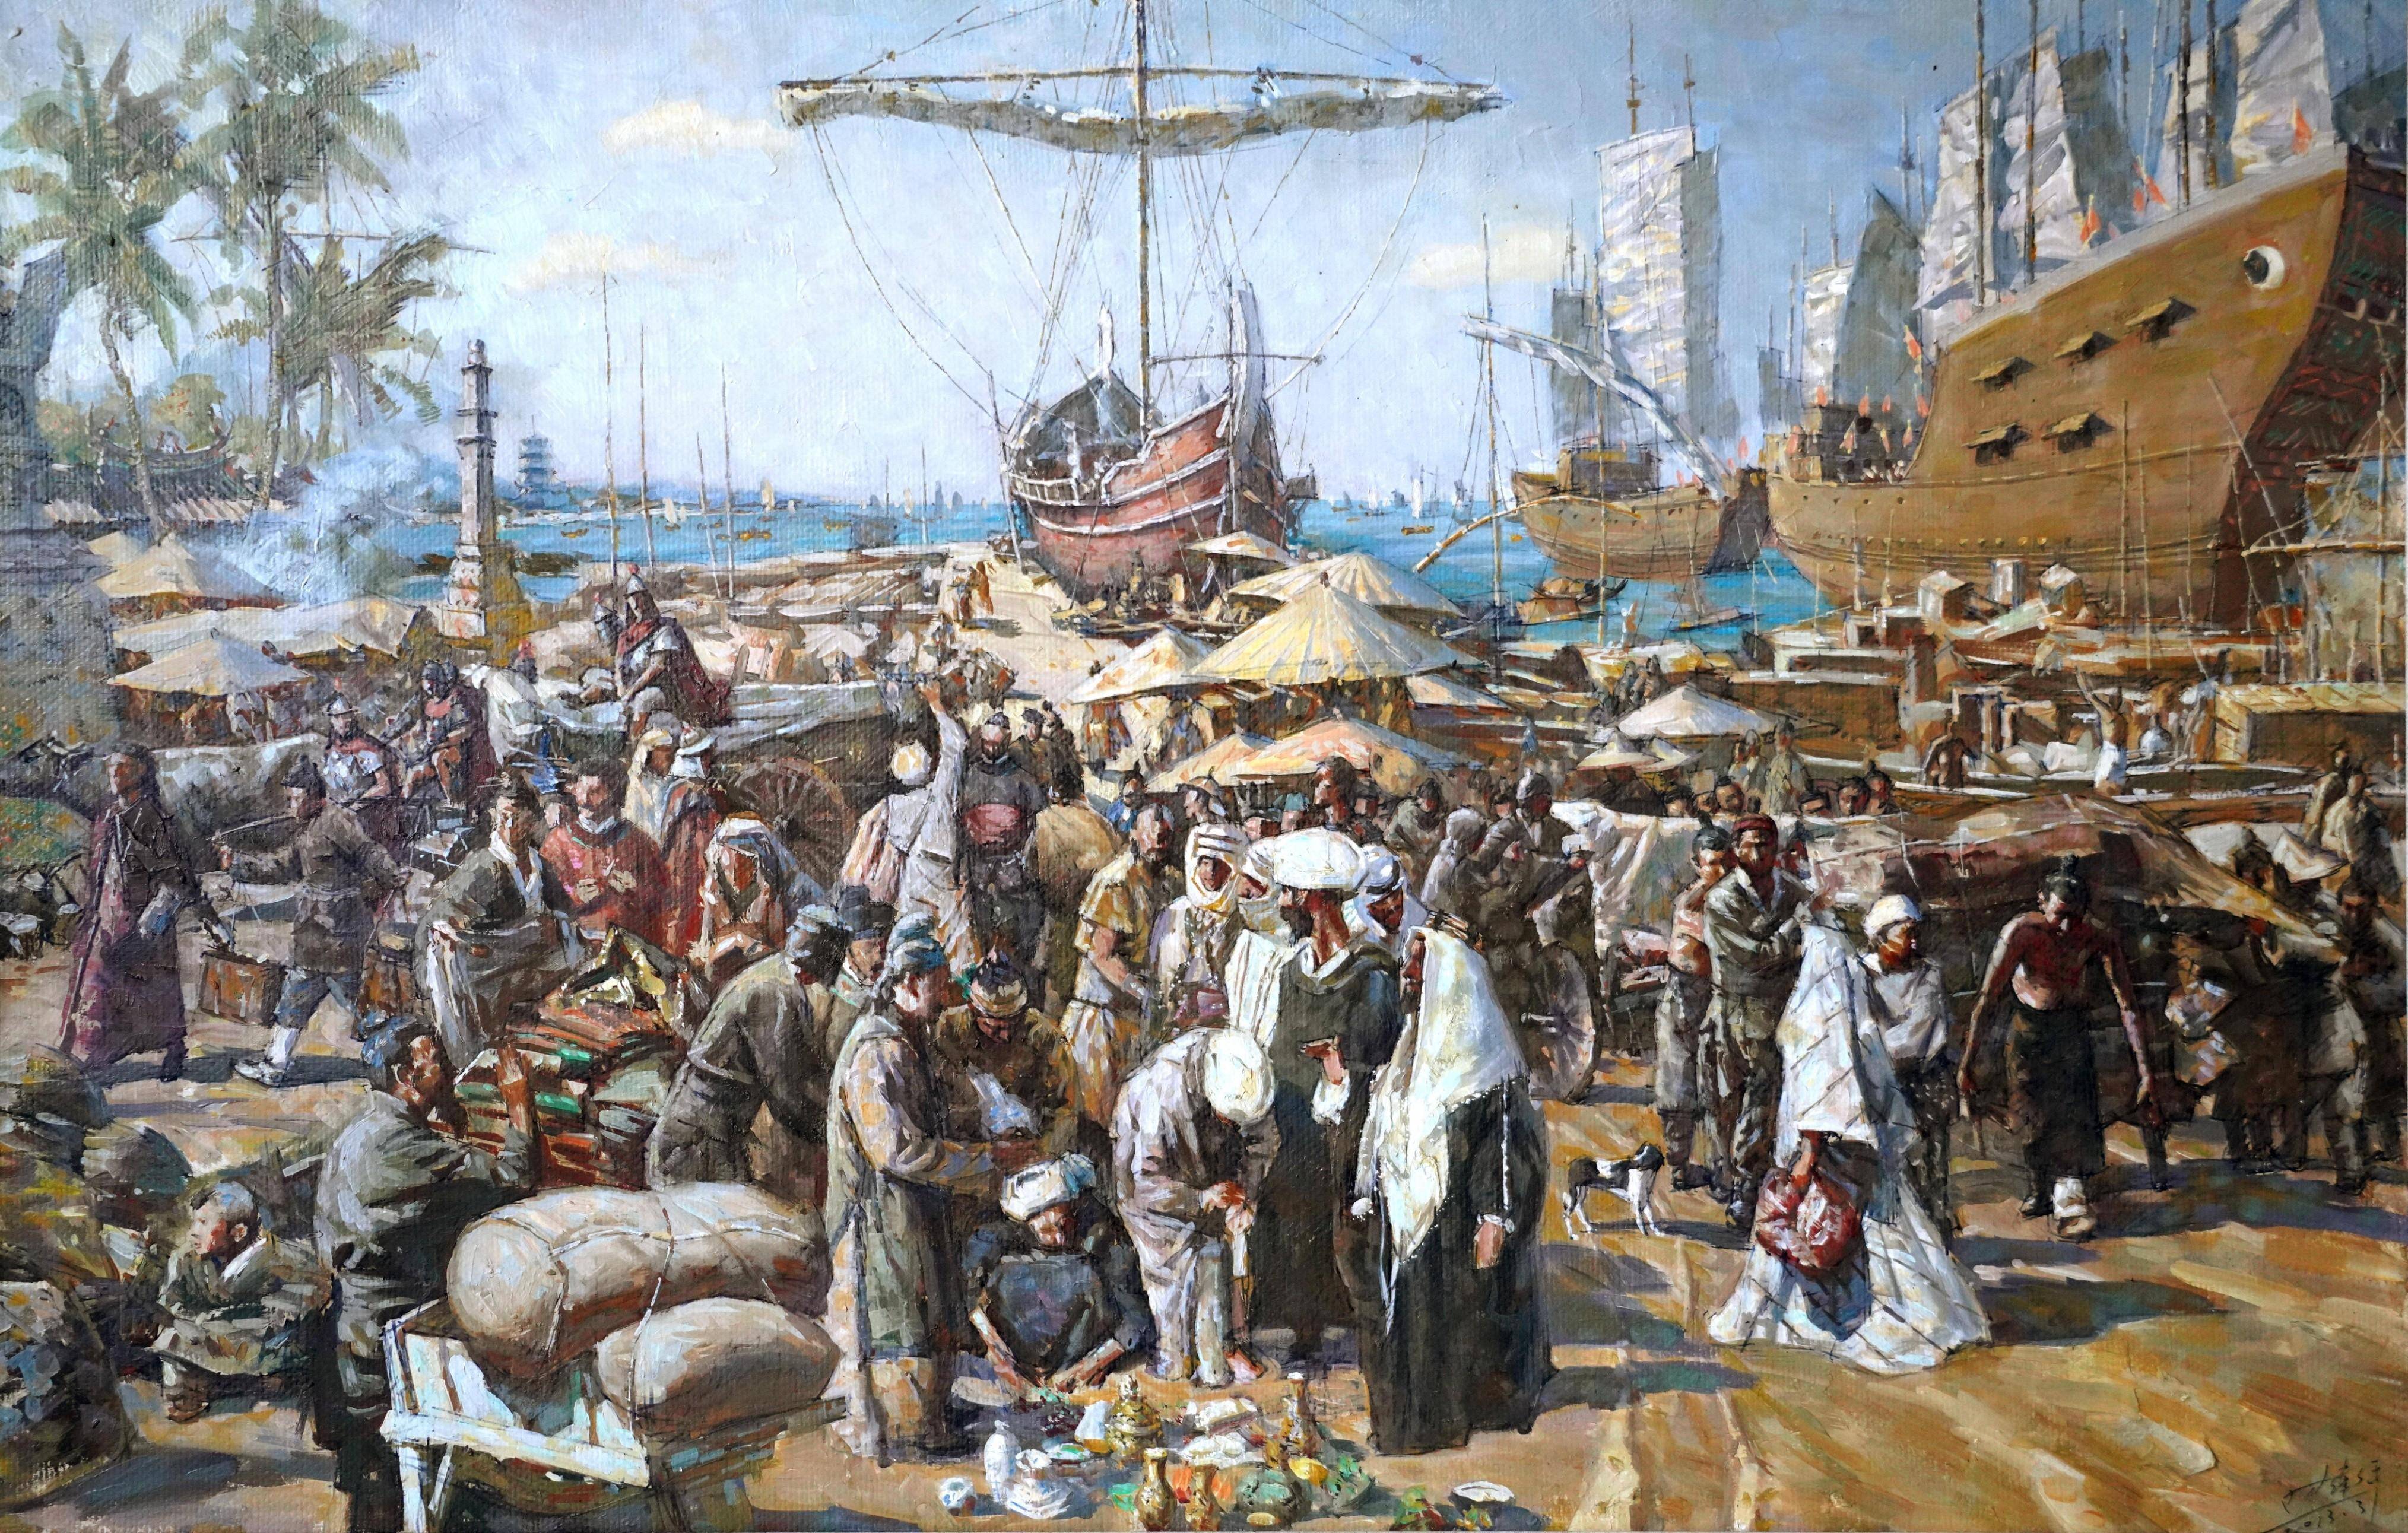 海上丝绸之路的起点,海外贸易的繁荣使得泉州成为当时世界第一大港口